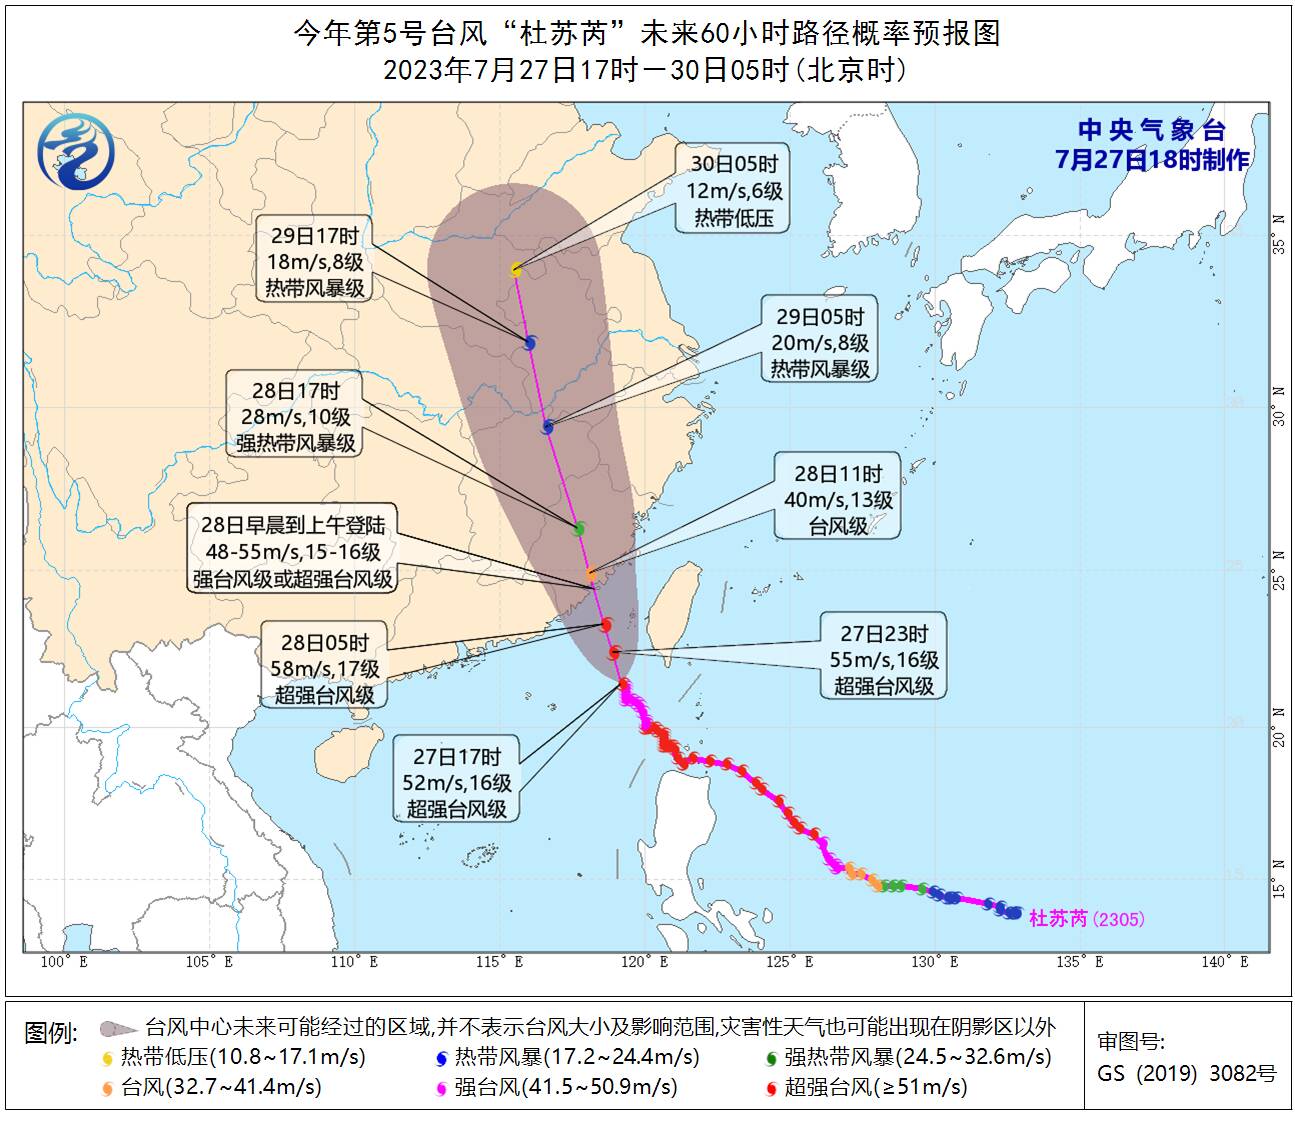 山东省防汛抗旱指挥部办公室下发通知要求切实做好今年第5号台风“杜苏芮”防御工作